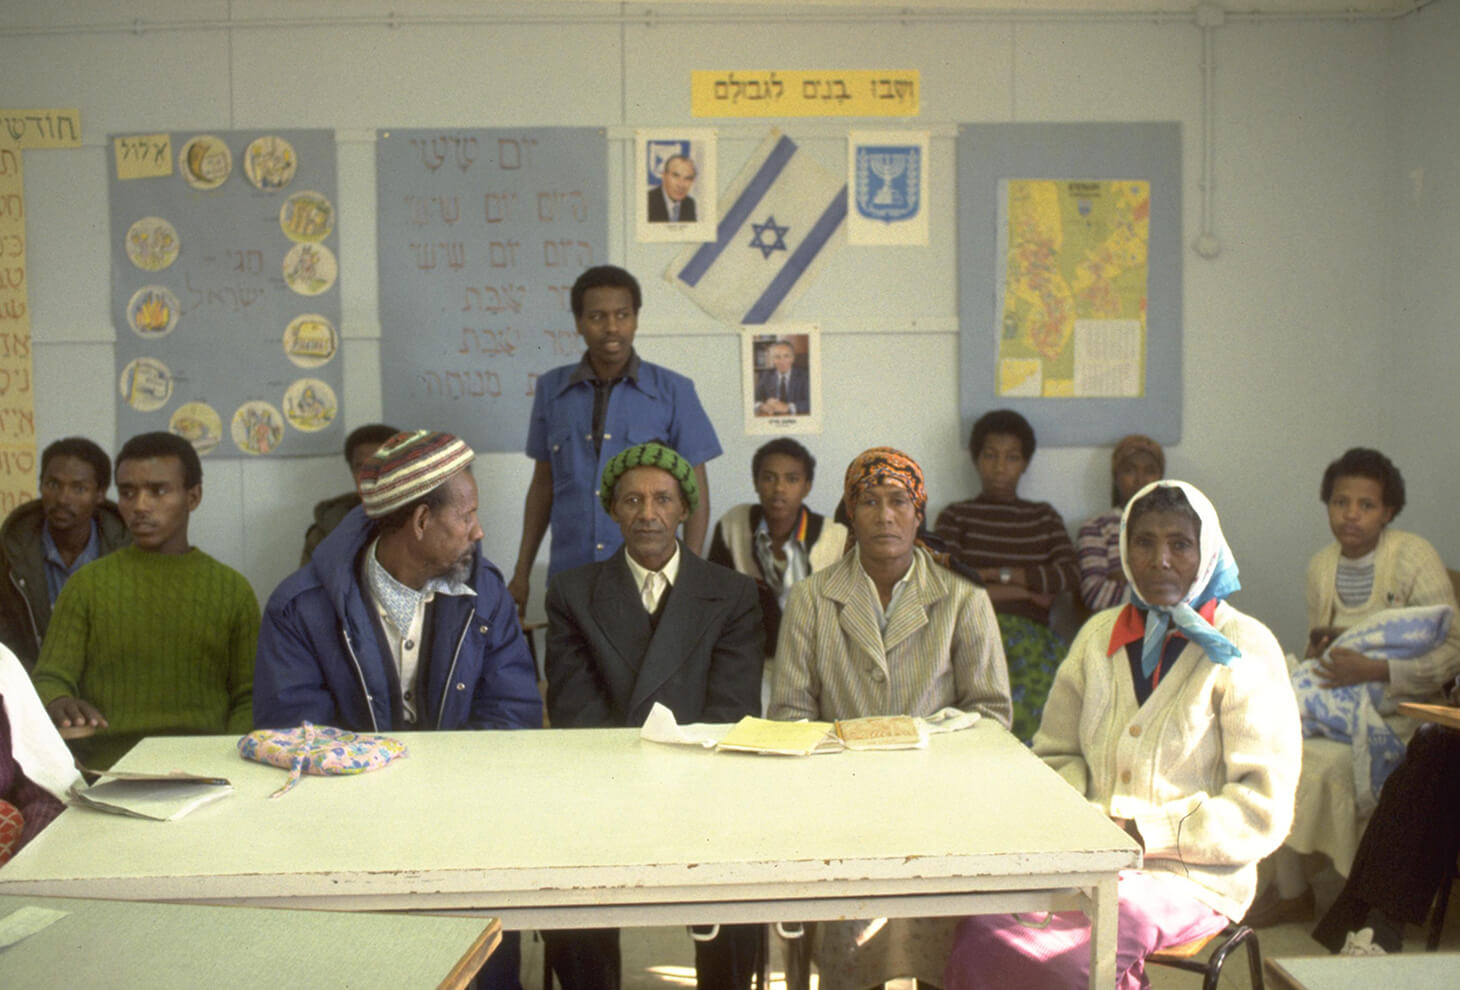 עולים חדשים מאתיופיה, לומדים עברית באולפן, במרכז הקליטה בעיר אשקלון. צלם: נתי הרניק לע